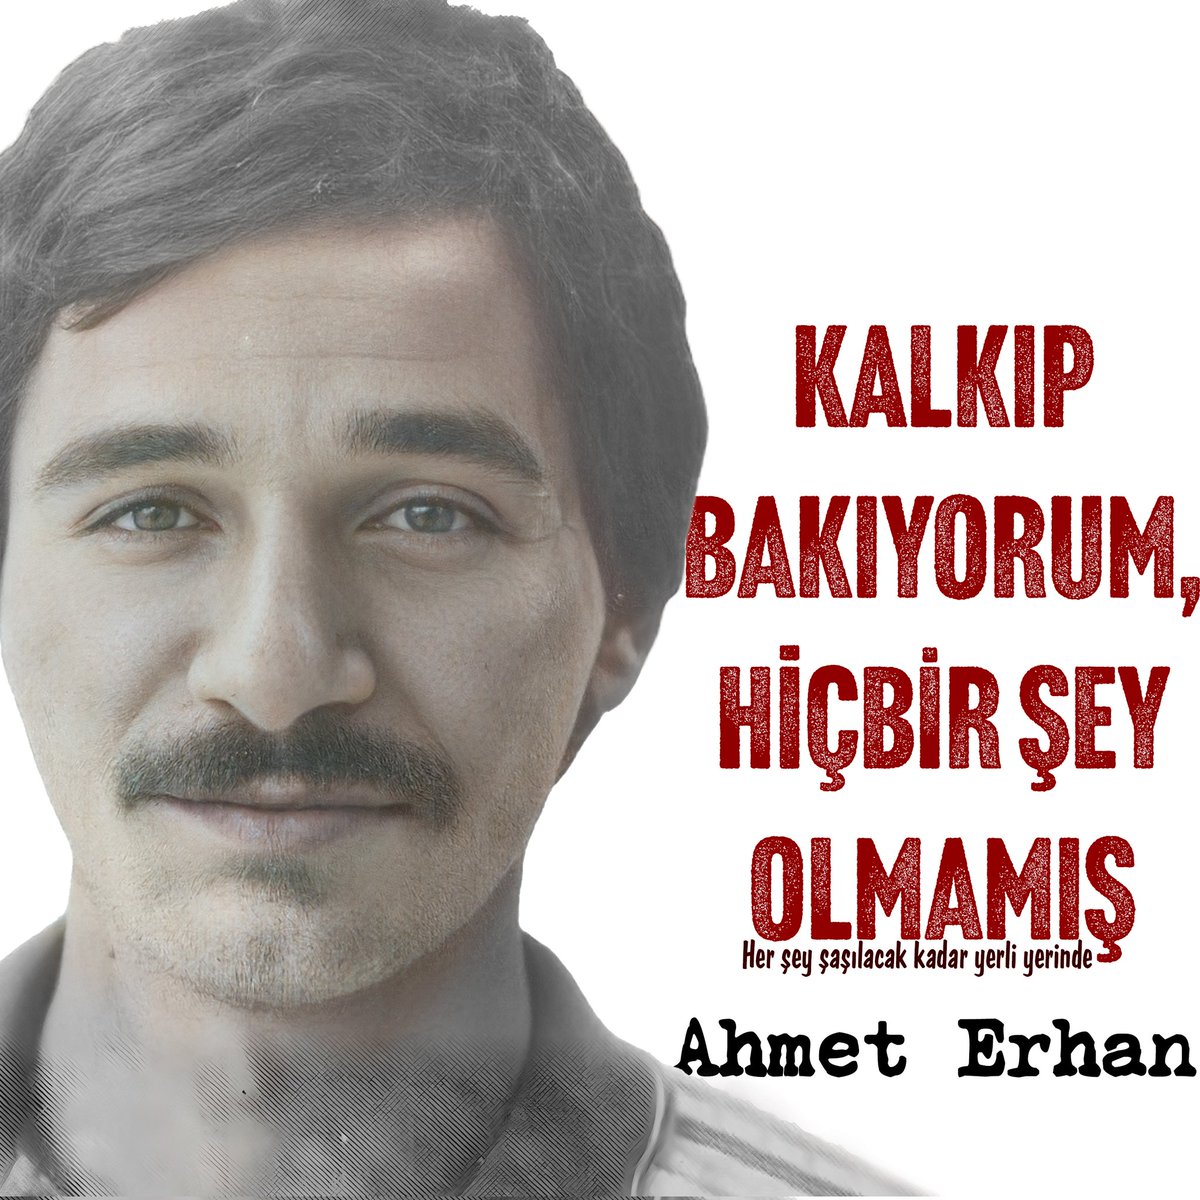 ...

Kalkıp bakıyorum,
hiçbir şey olmamış
Her şey şaşılacak kadar
yerli yerinde...

#AhmetErhan